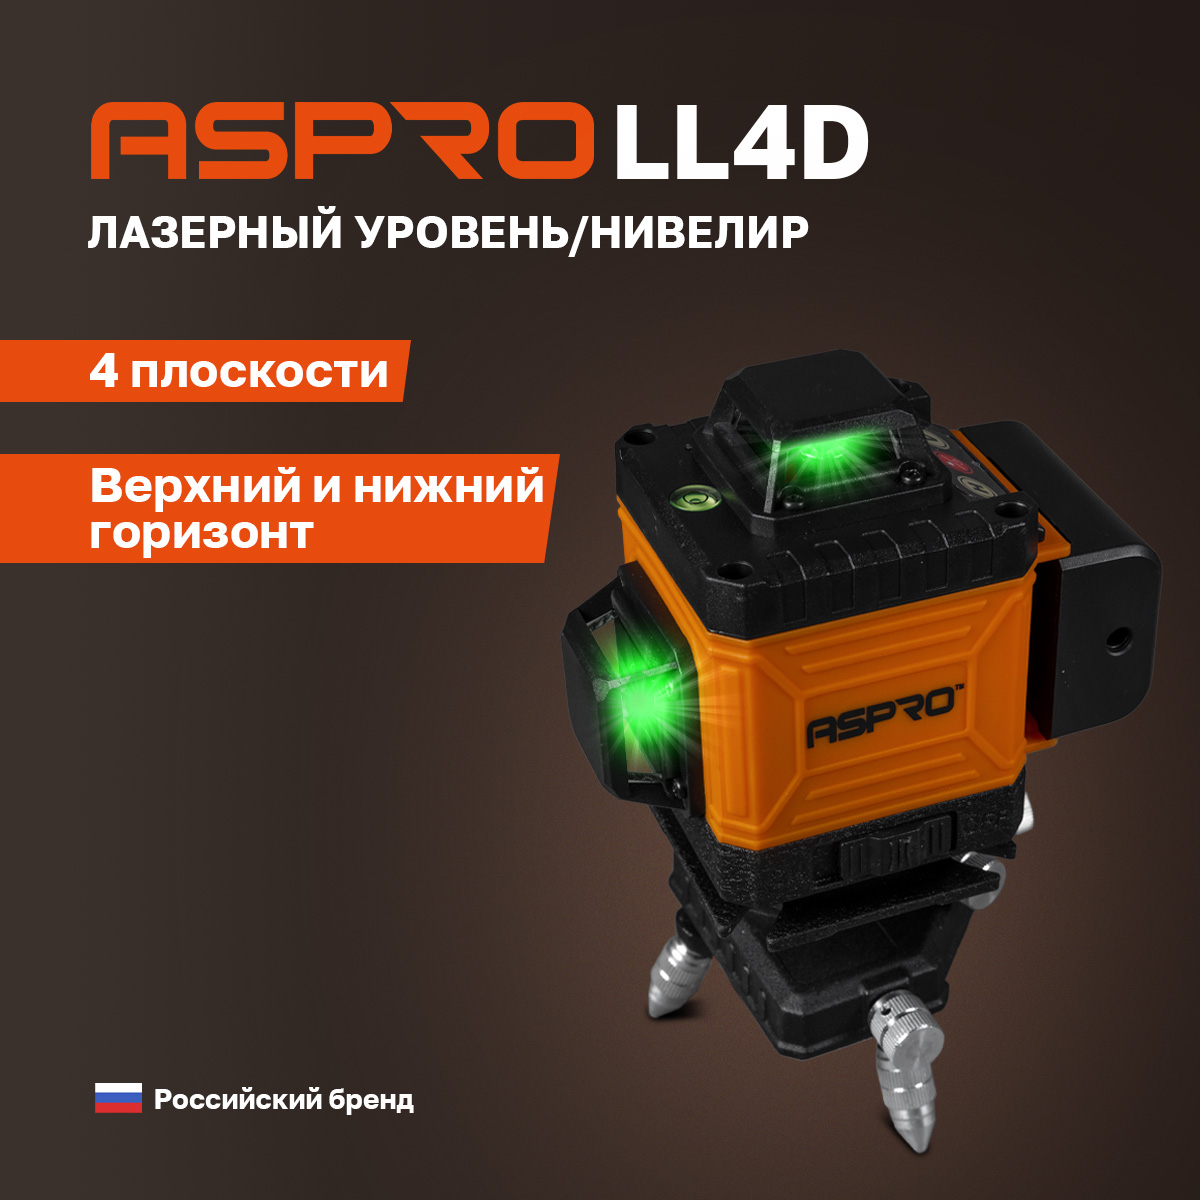 Лазерный уровень (нивелир) ASPRO-LL4D®, 102183